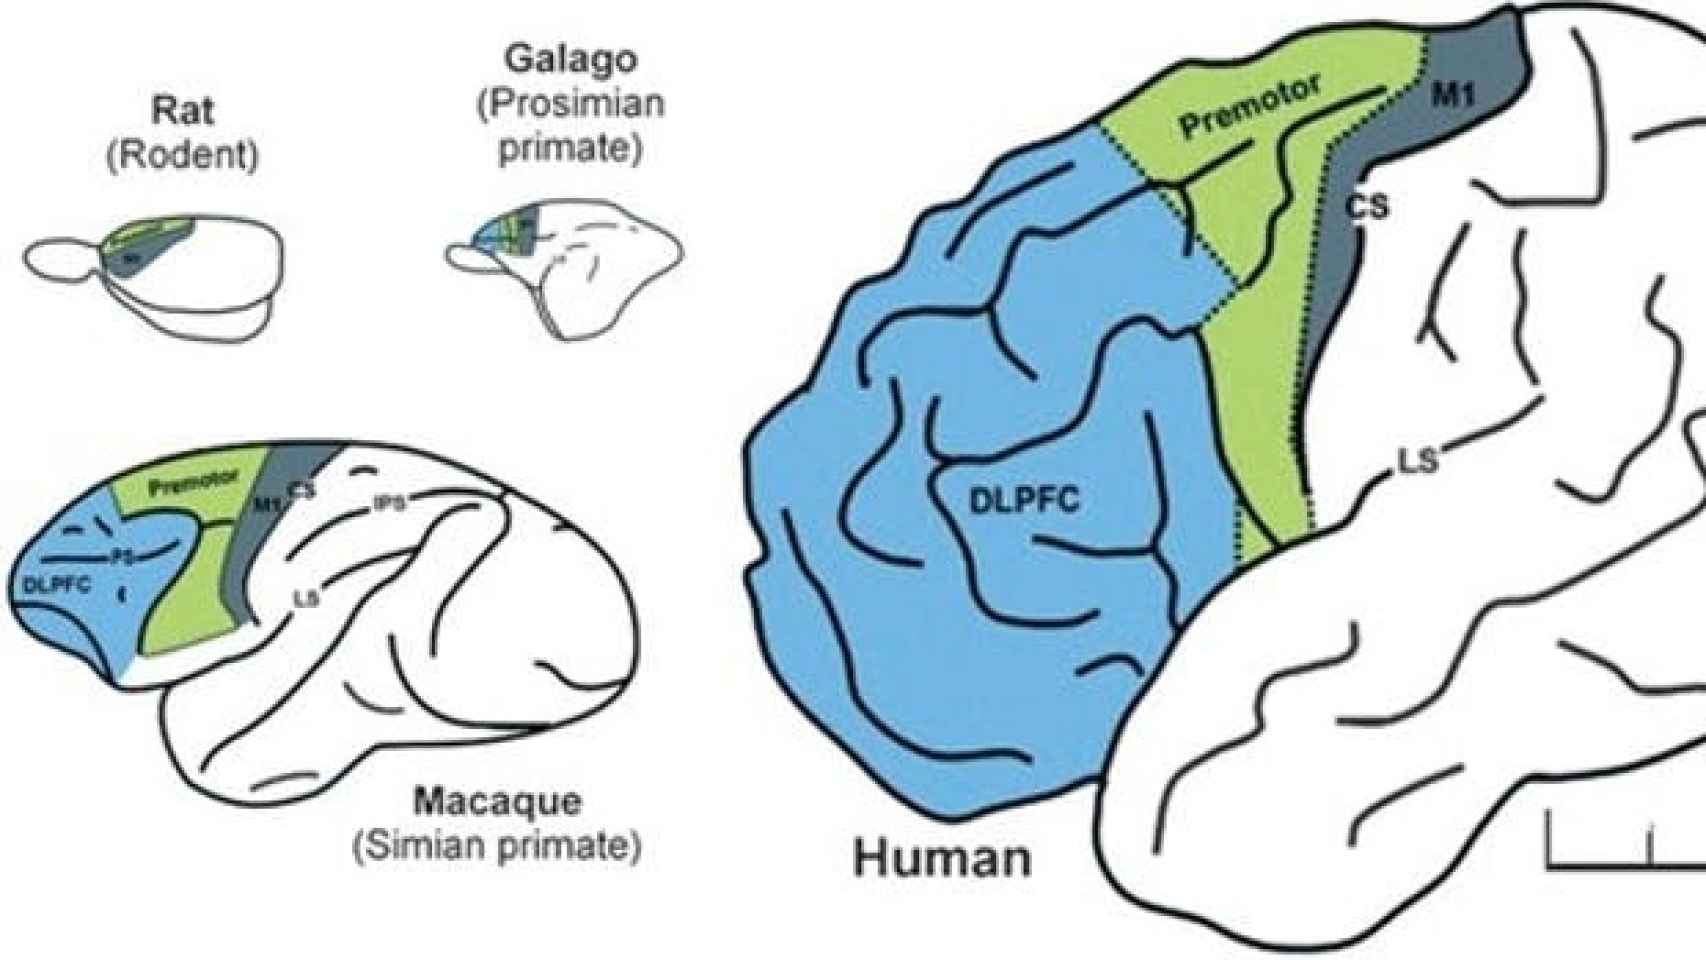 Comparación del cerebro de rata, galago, macaco y humano. En azul, la corteza prefrontal.